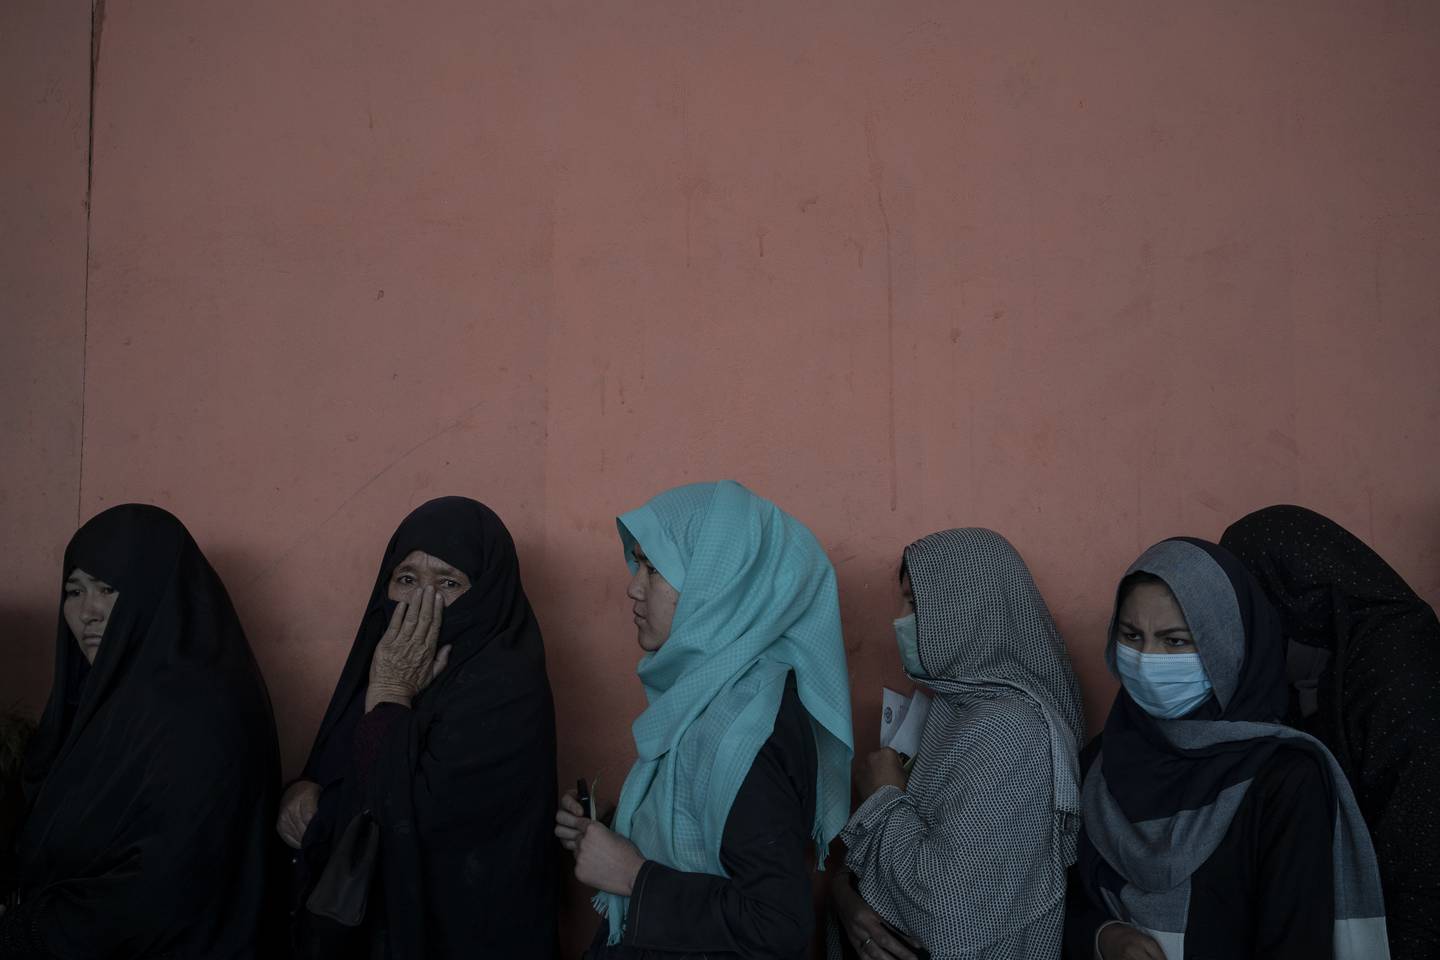 Kvinner venter i kø for å få kontanter i en utdeling organisert av Verdens matvareprogram (WFP) i Kabul.